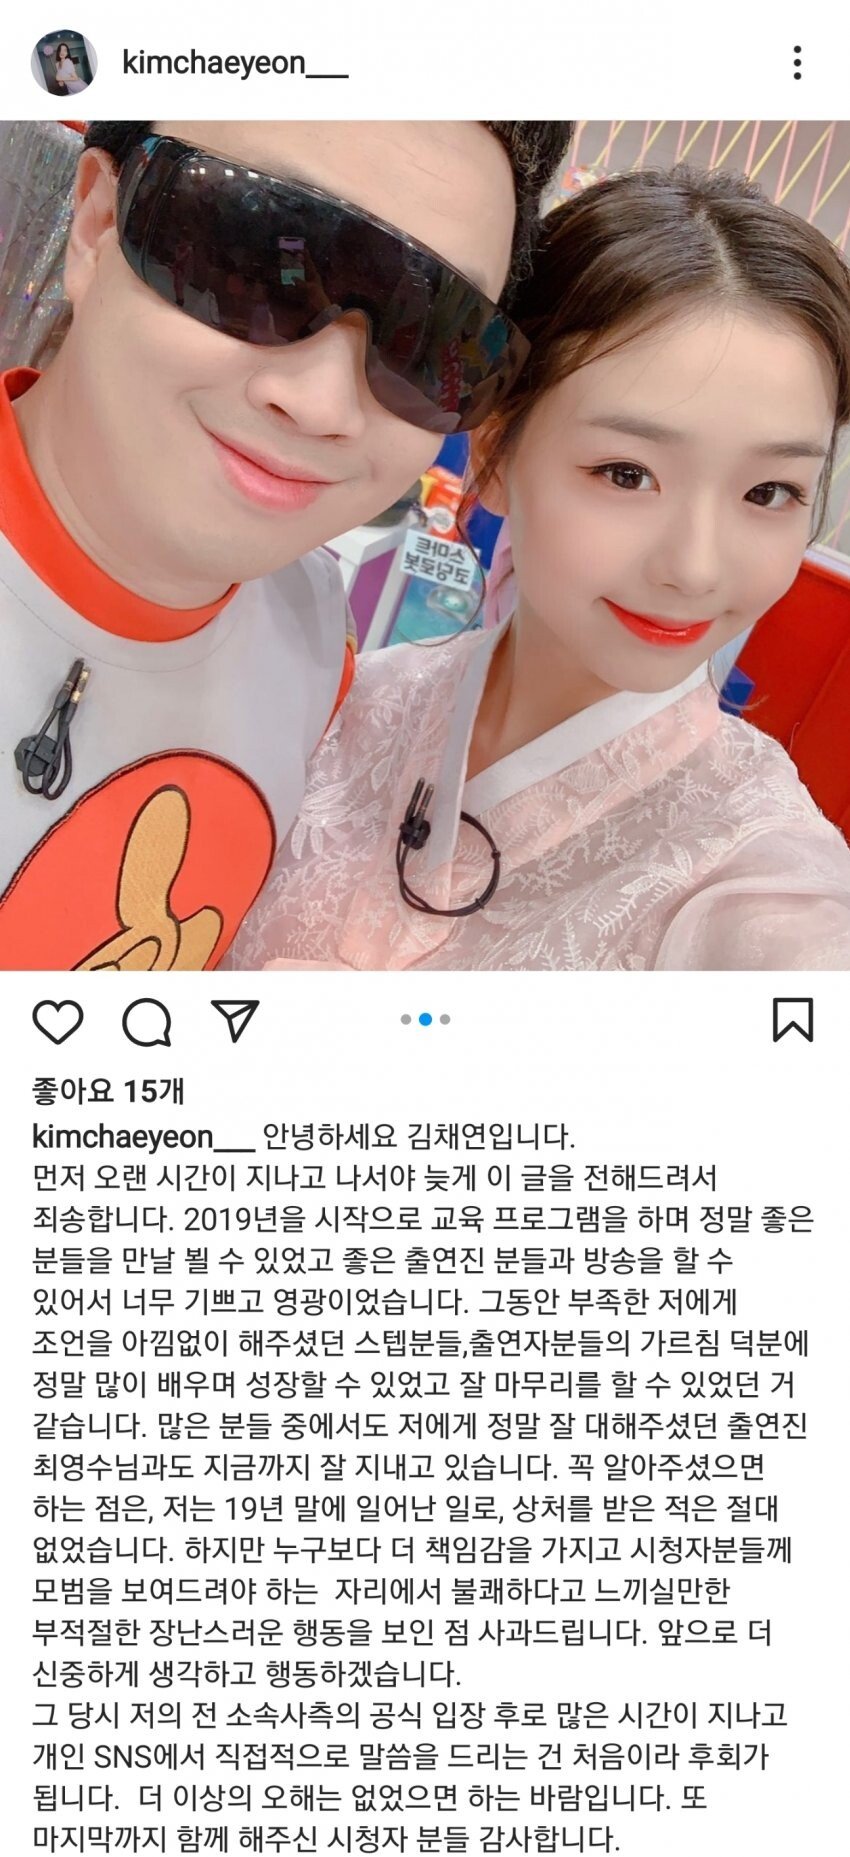 Kim Chaeyeon's Instagram statement. JPG